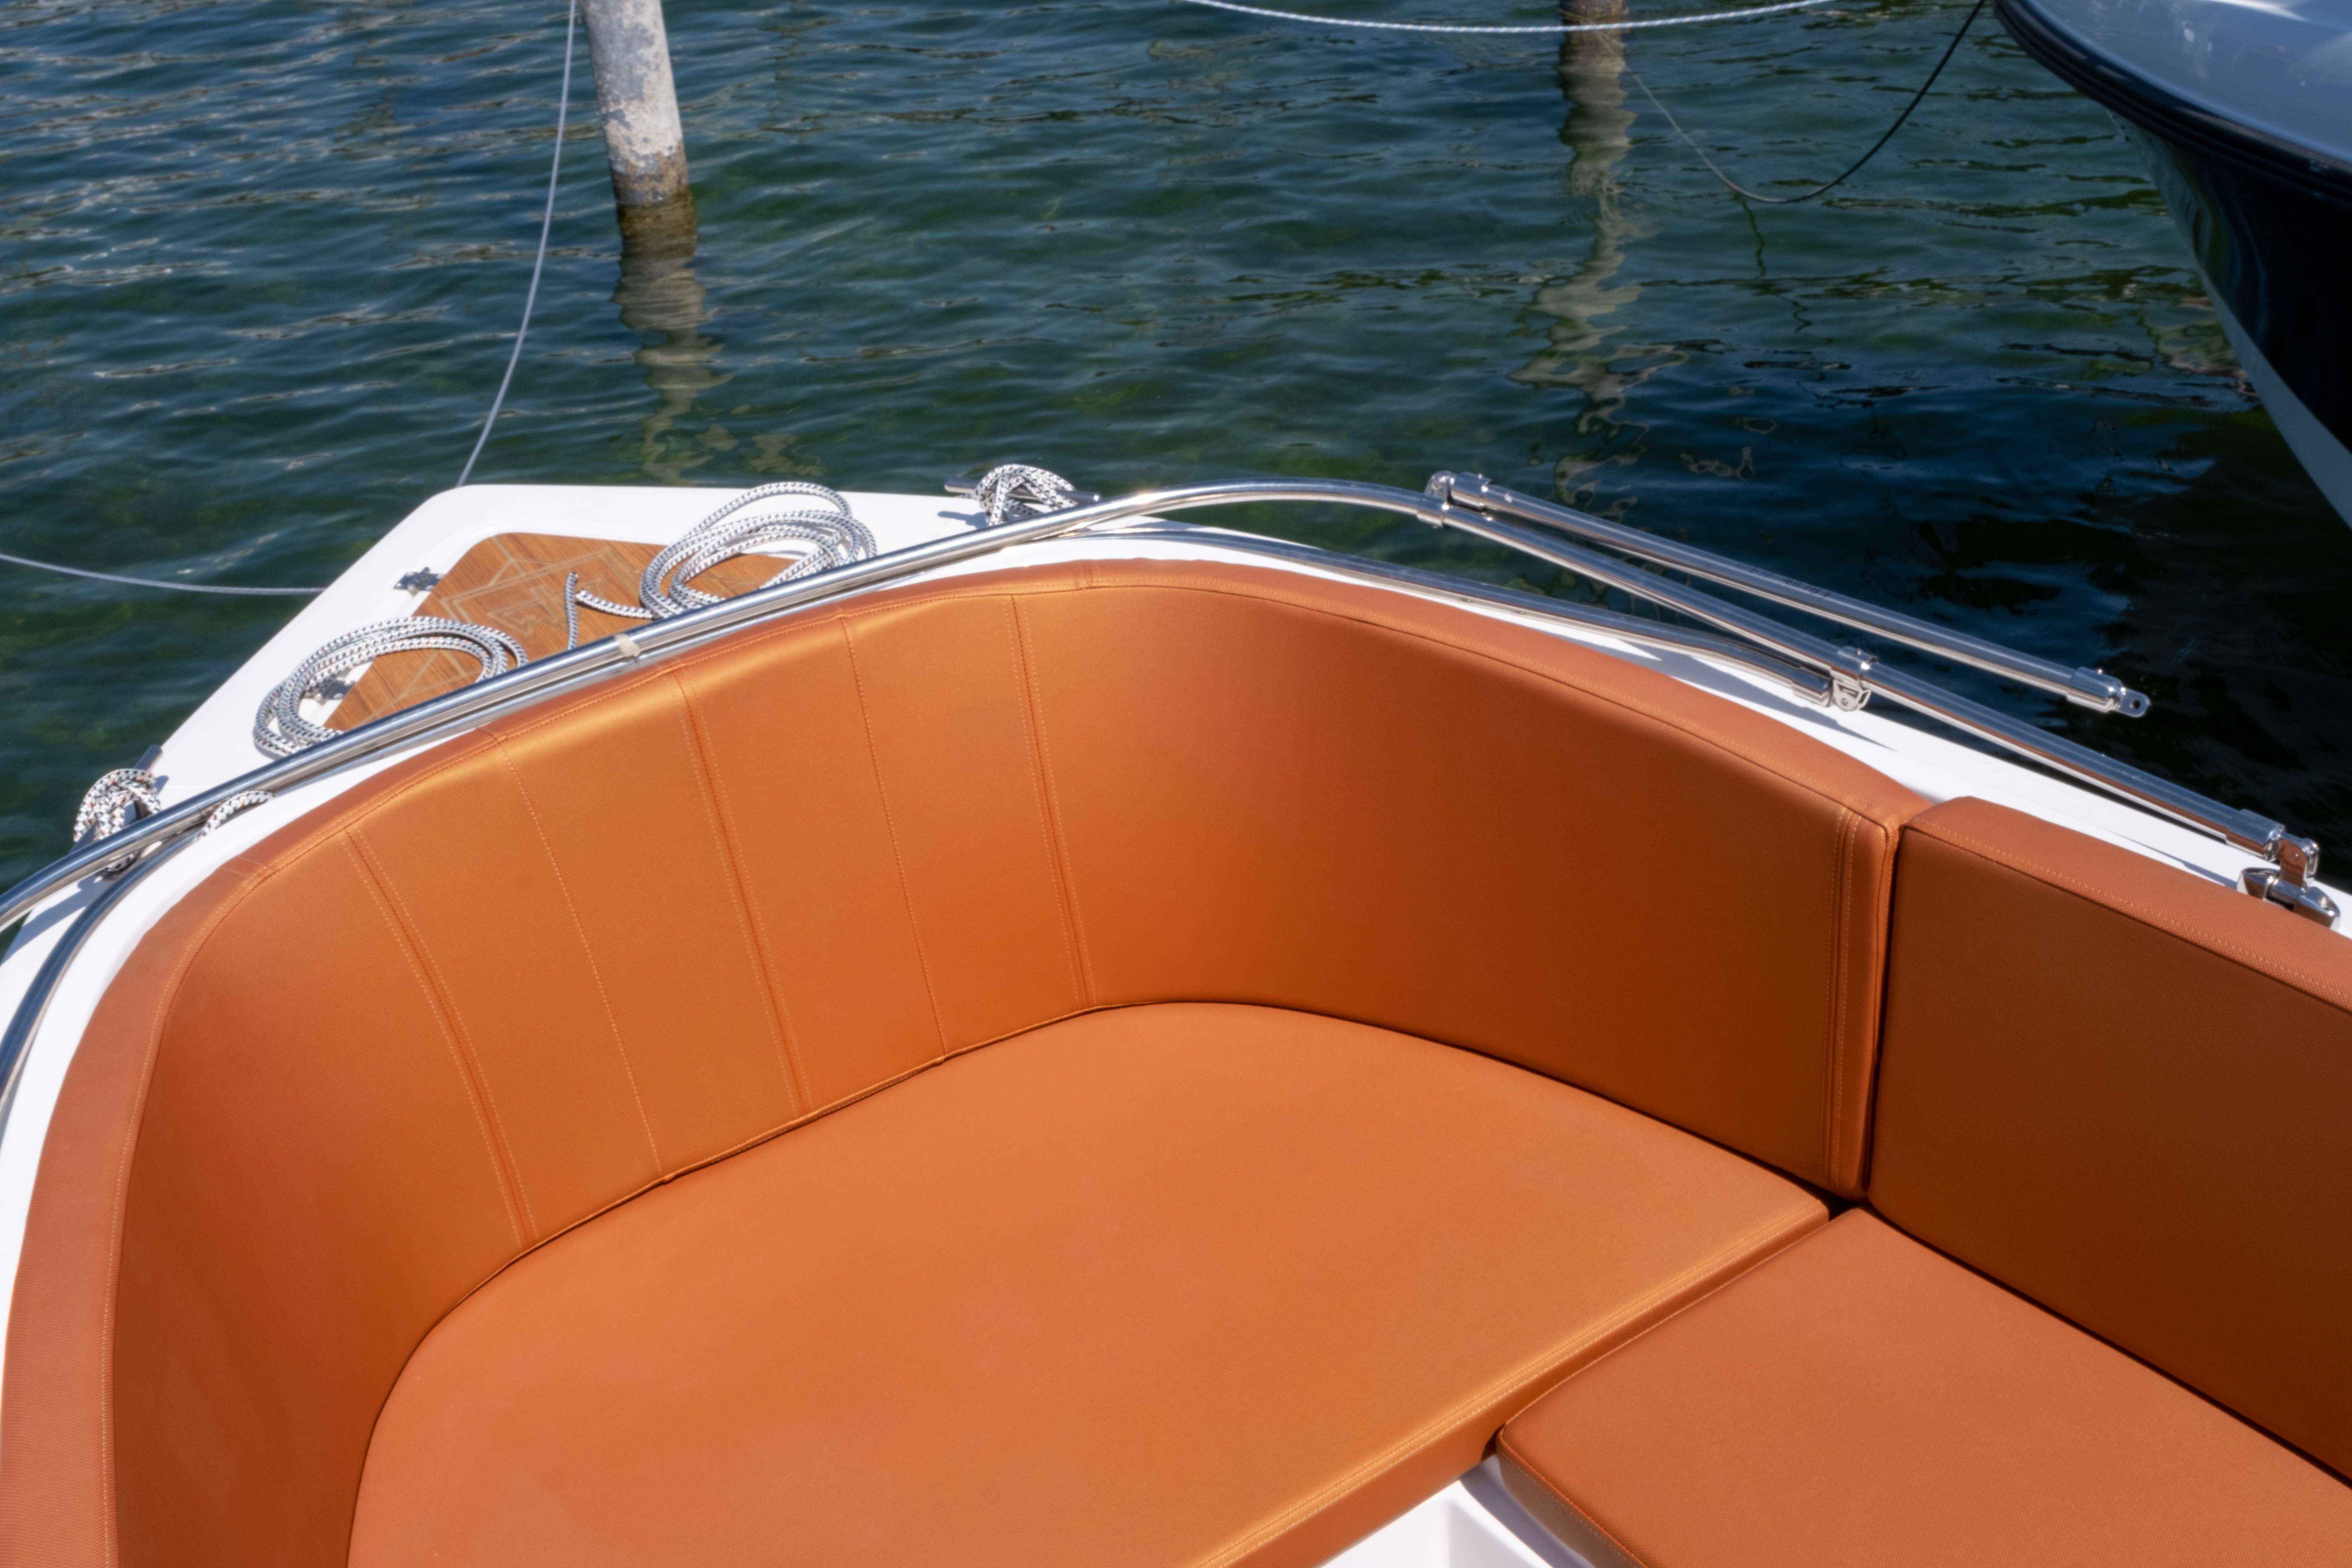 Vermietung Motorboot für schöne Tagestrips Alonsea 490 (4,70m x 1,90m) - 1 Tag